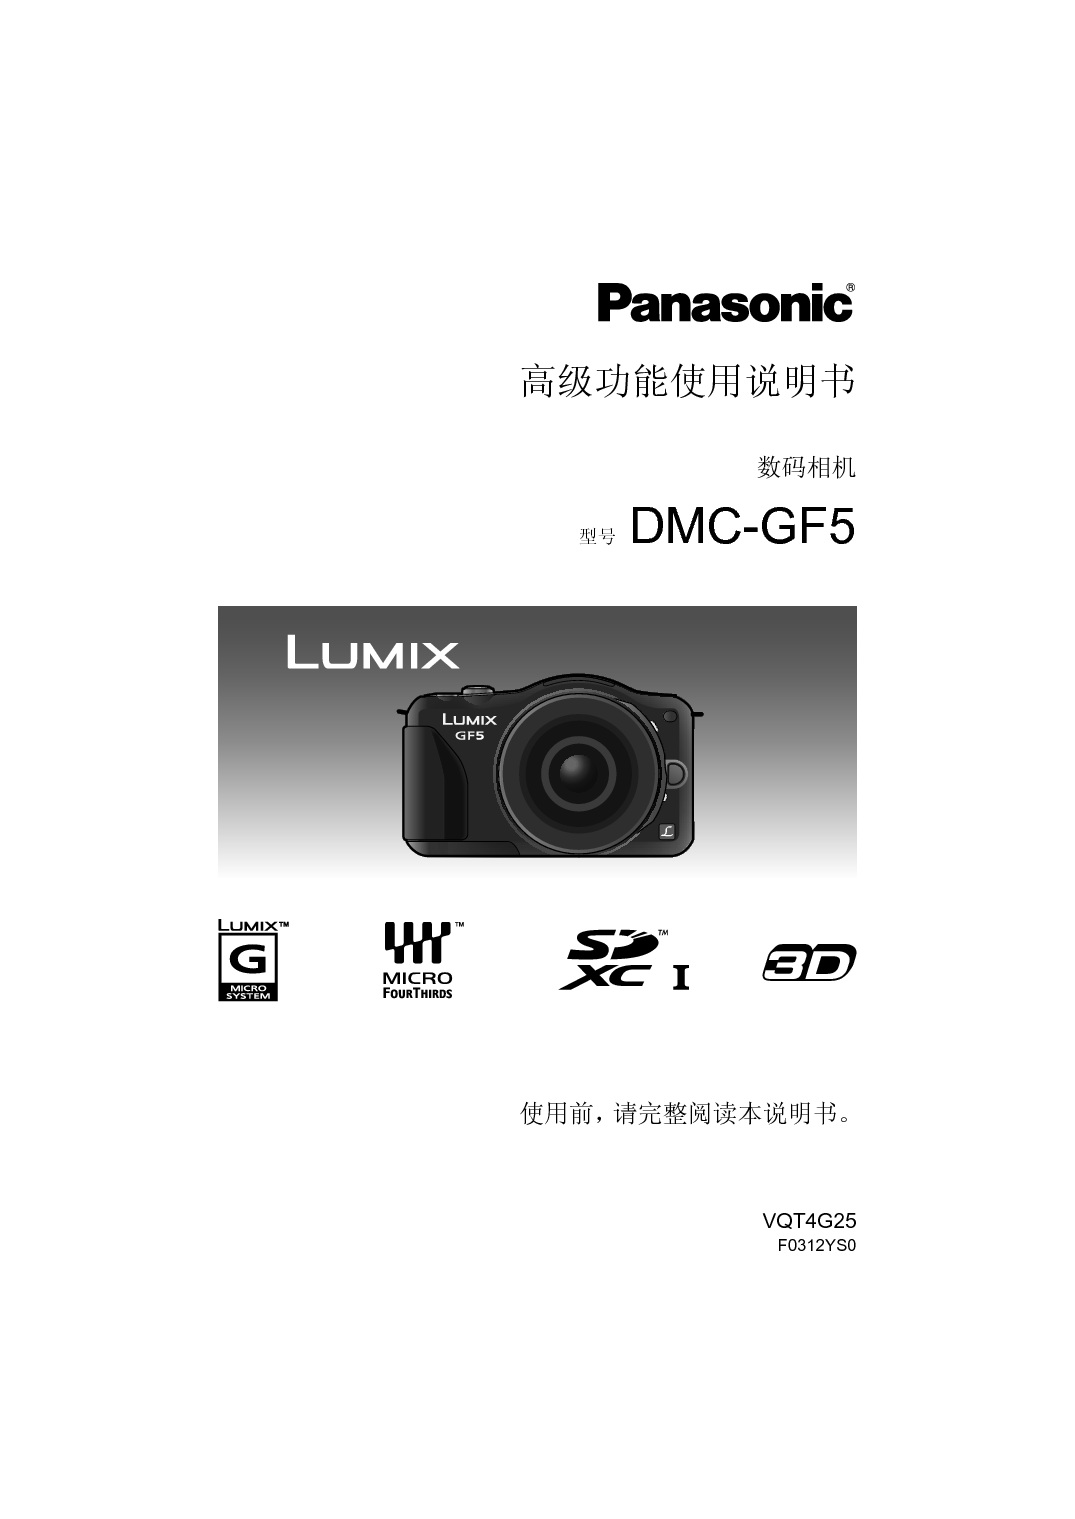 松下 Panasonic DMC-GF5GK 高级说明书 封面